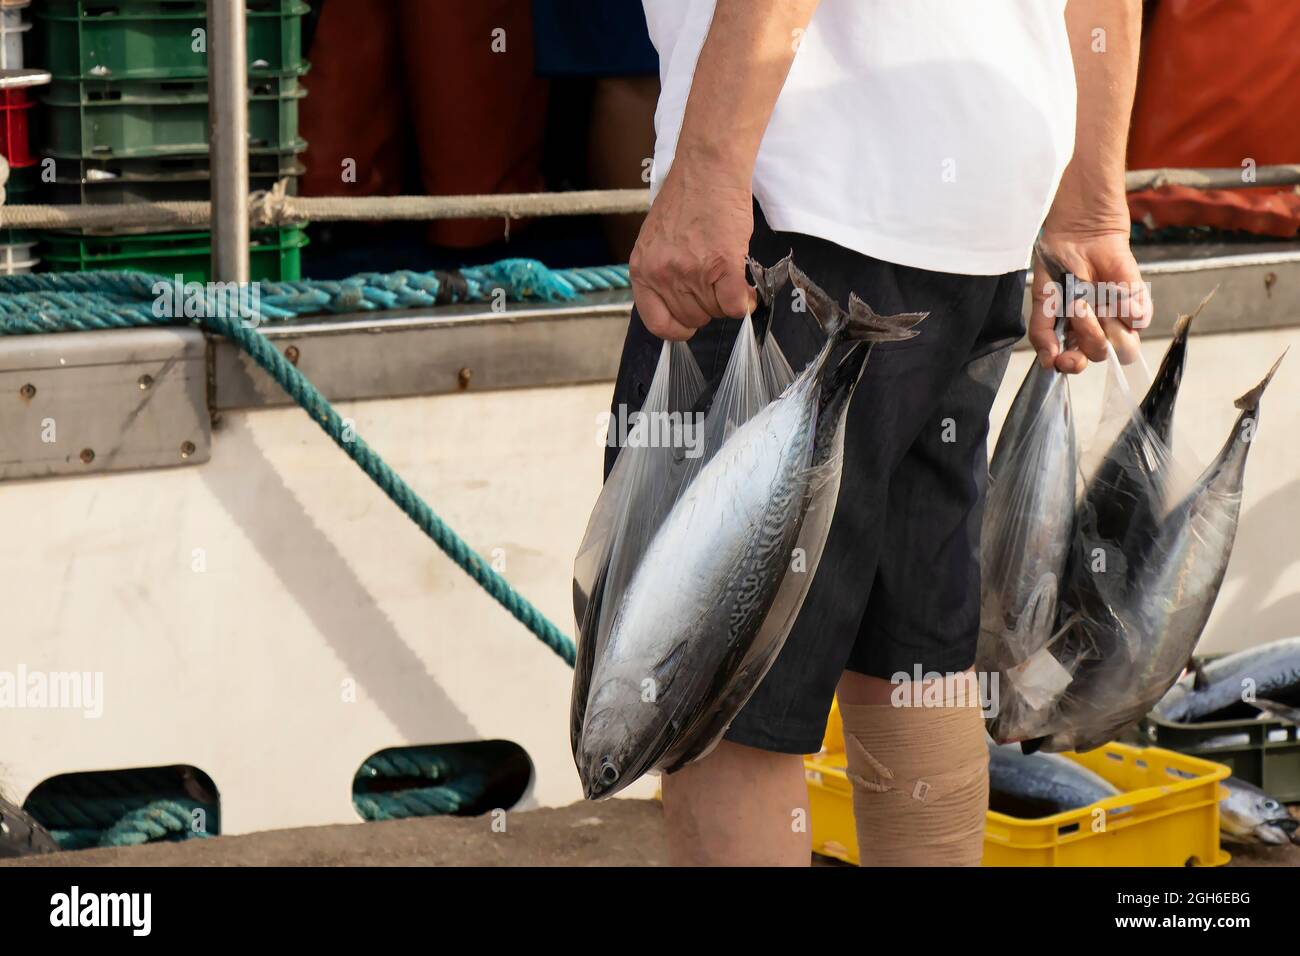 Tribunj, Croazia - 4 agosto 2021: Persona che tiene sacchi di plastica pieni di pesce fresco di bonito Atlantico appena acquistato dai pescatori su un molo Foto Stock